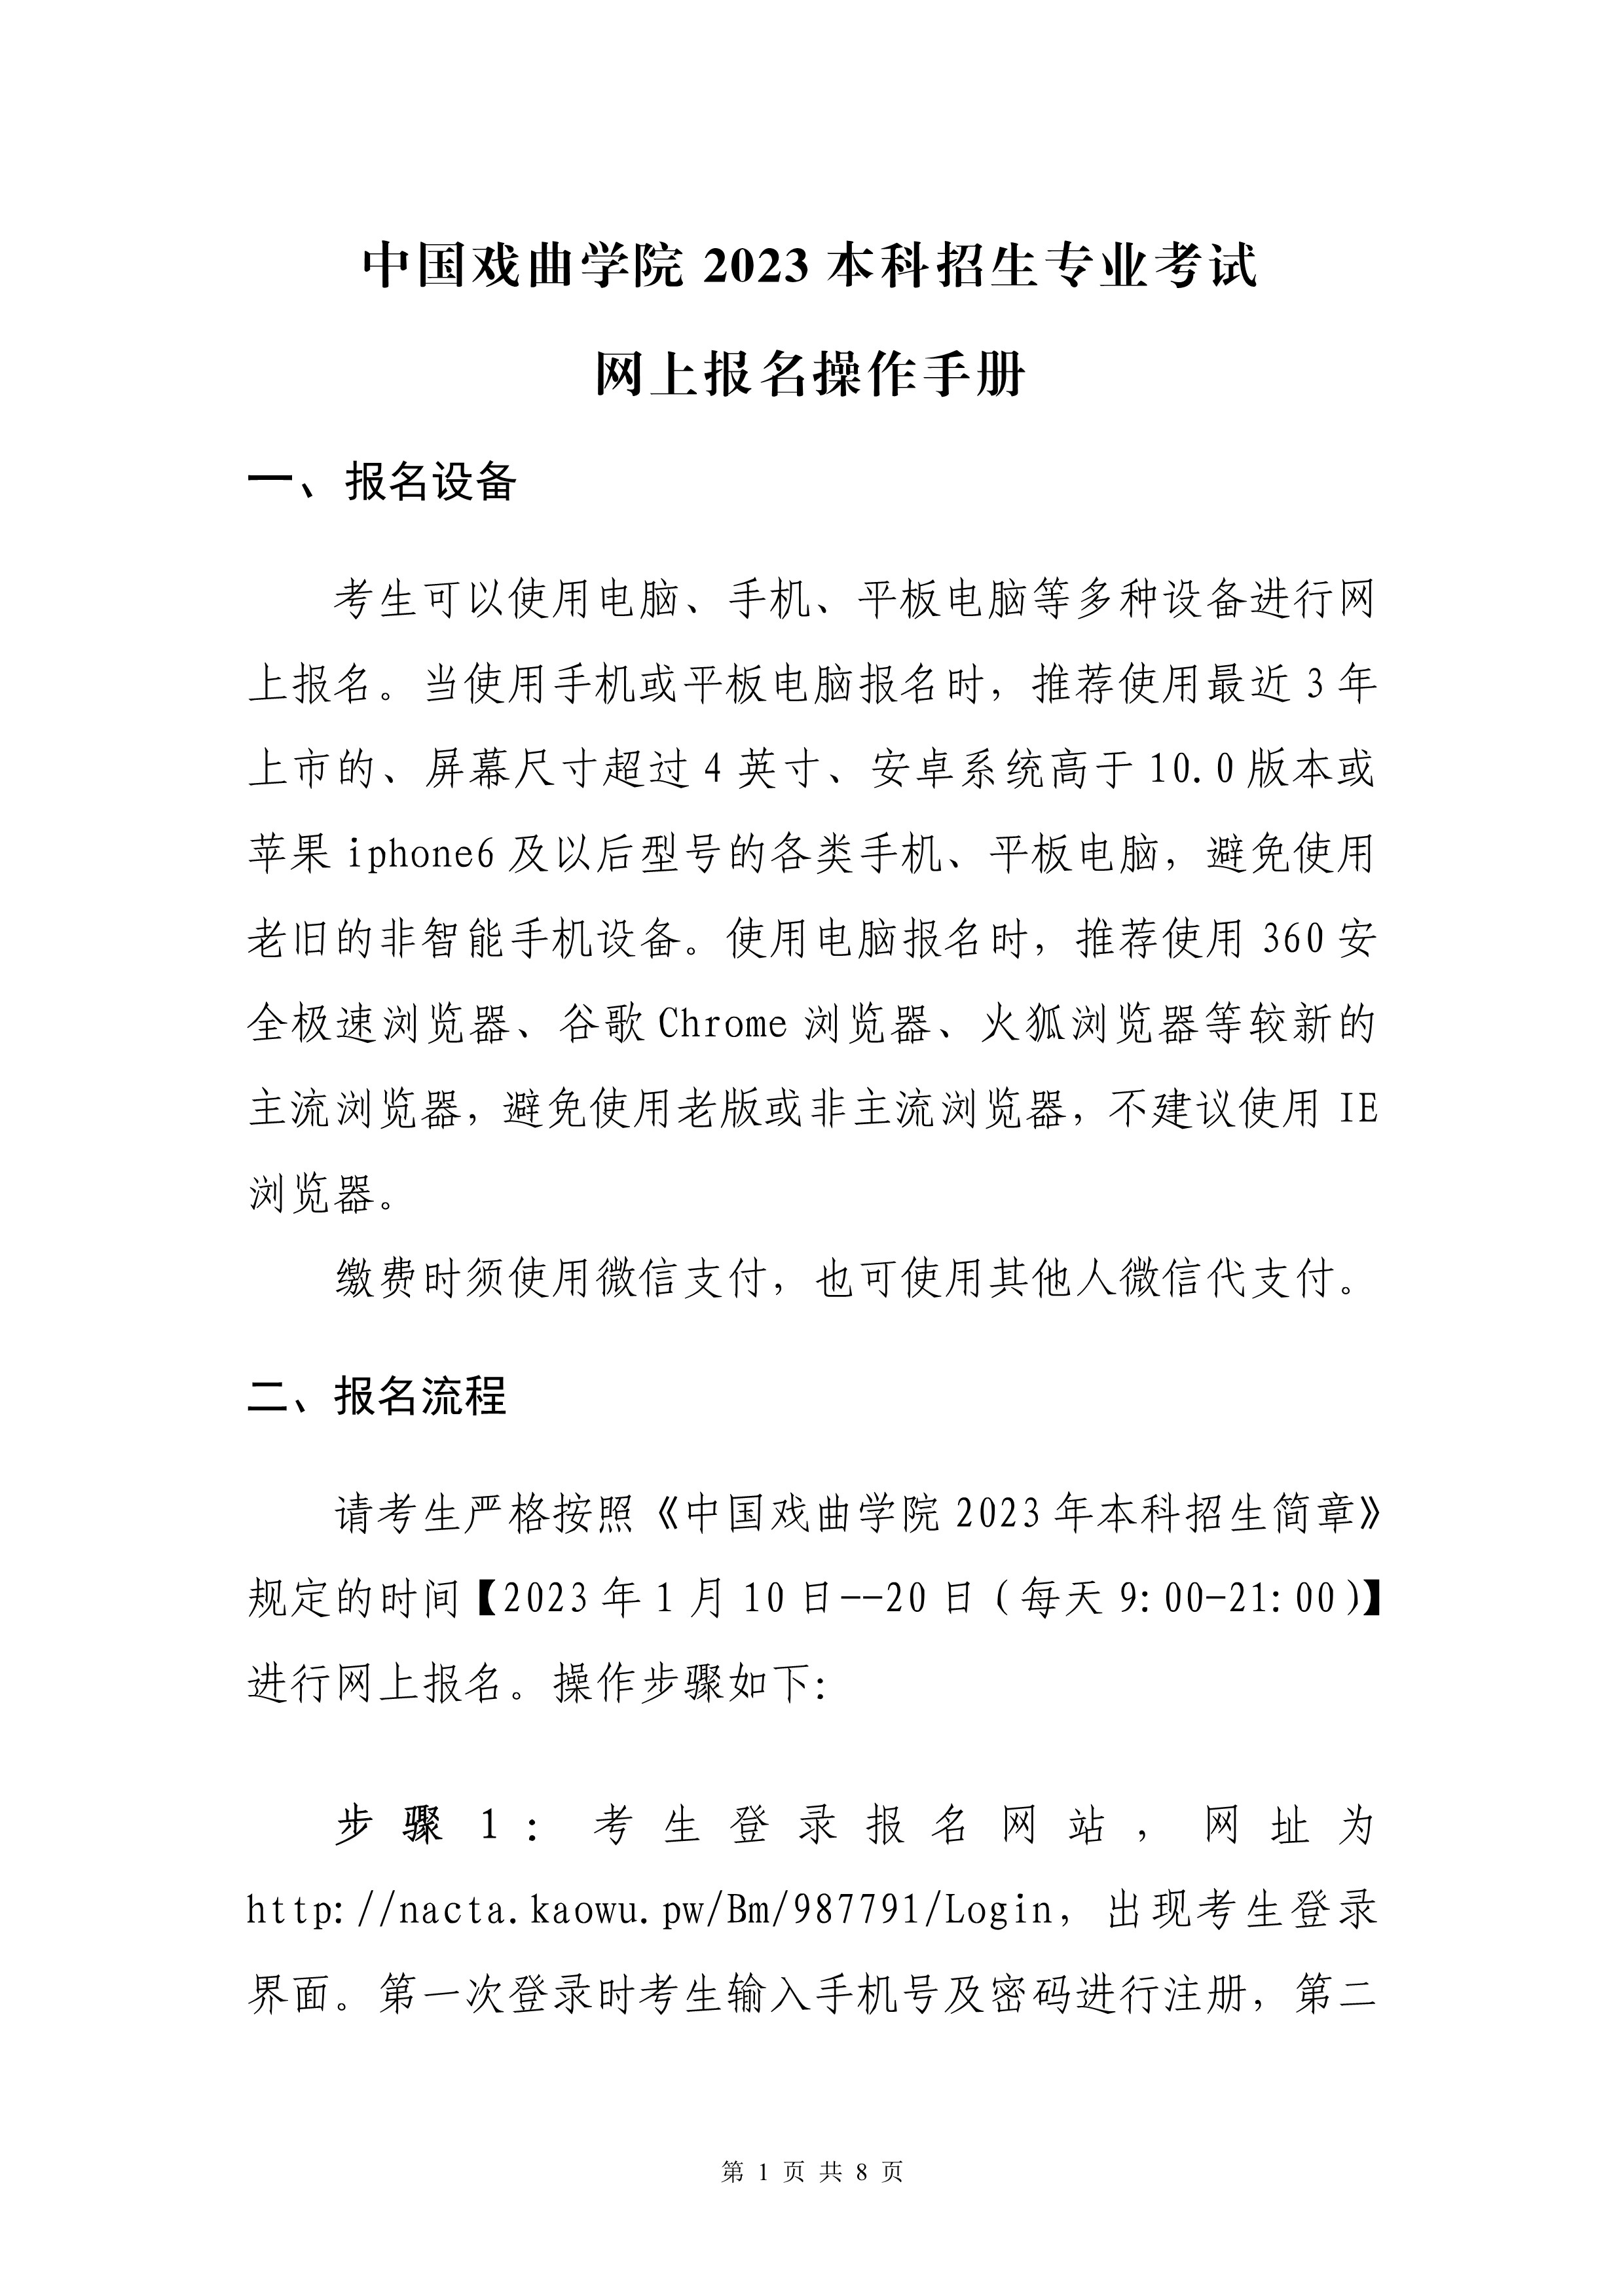 中国戏曲学院2023本科招生专业考试网上报名操作手册_1.jpg